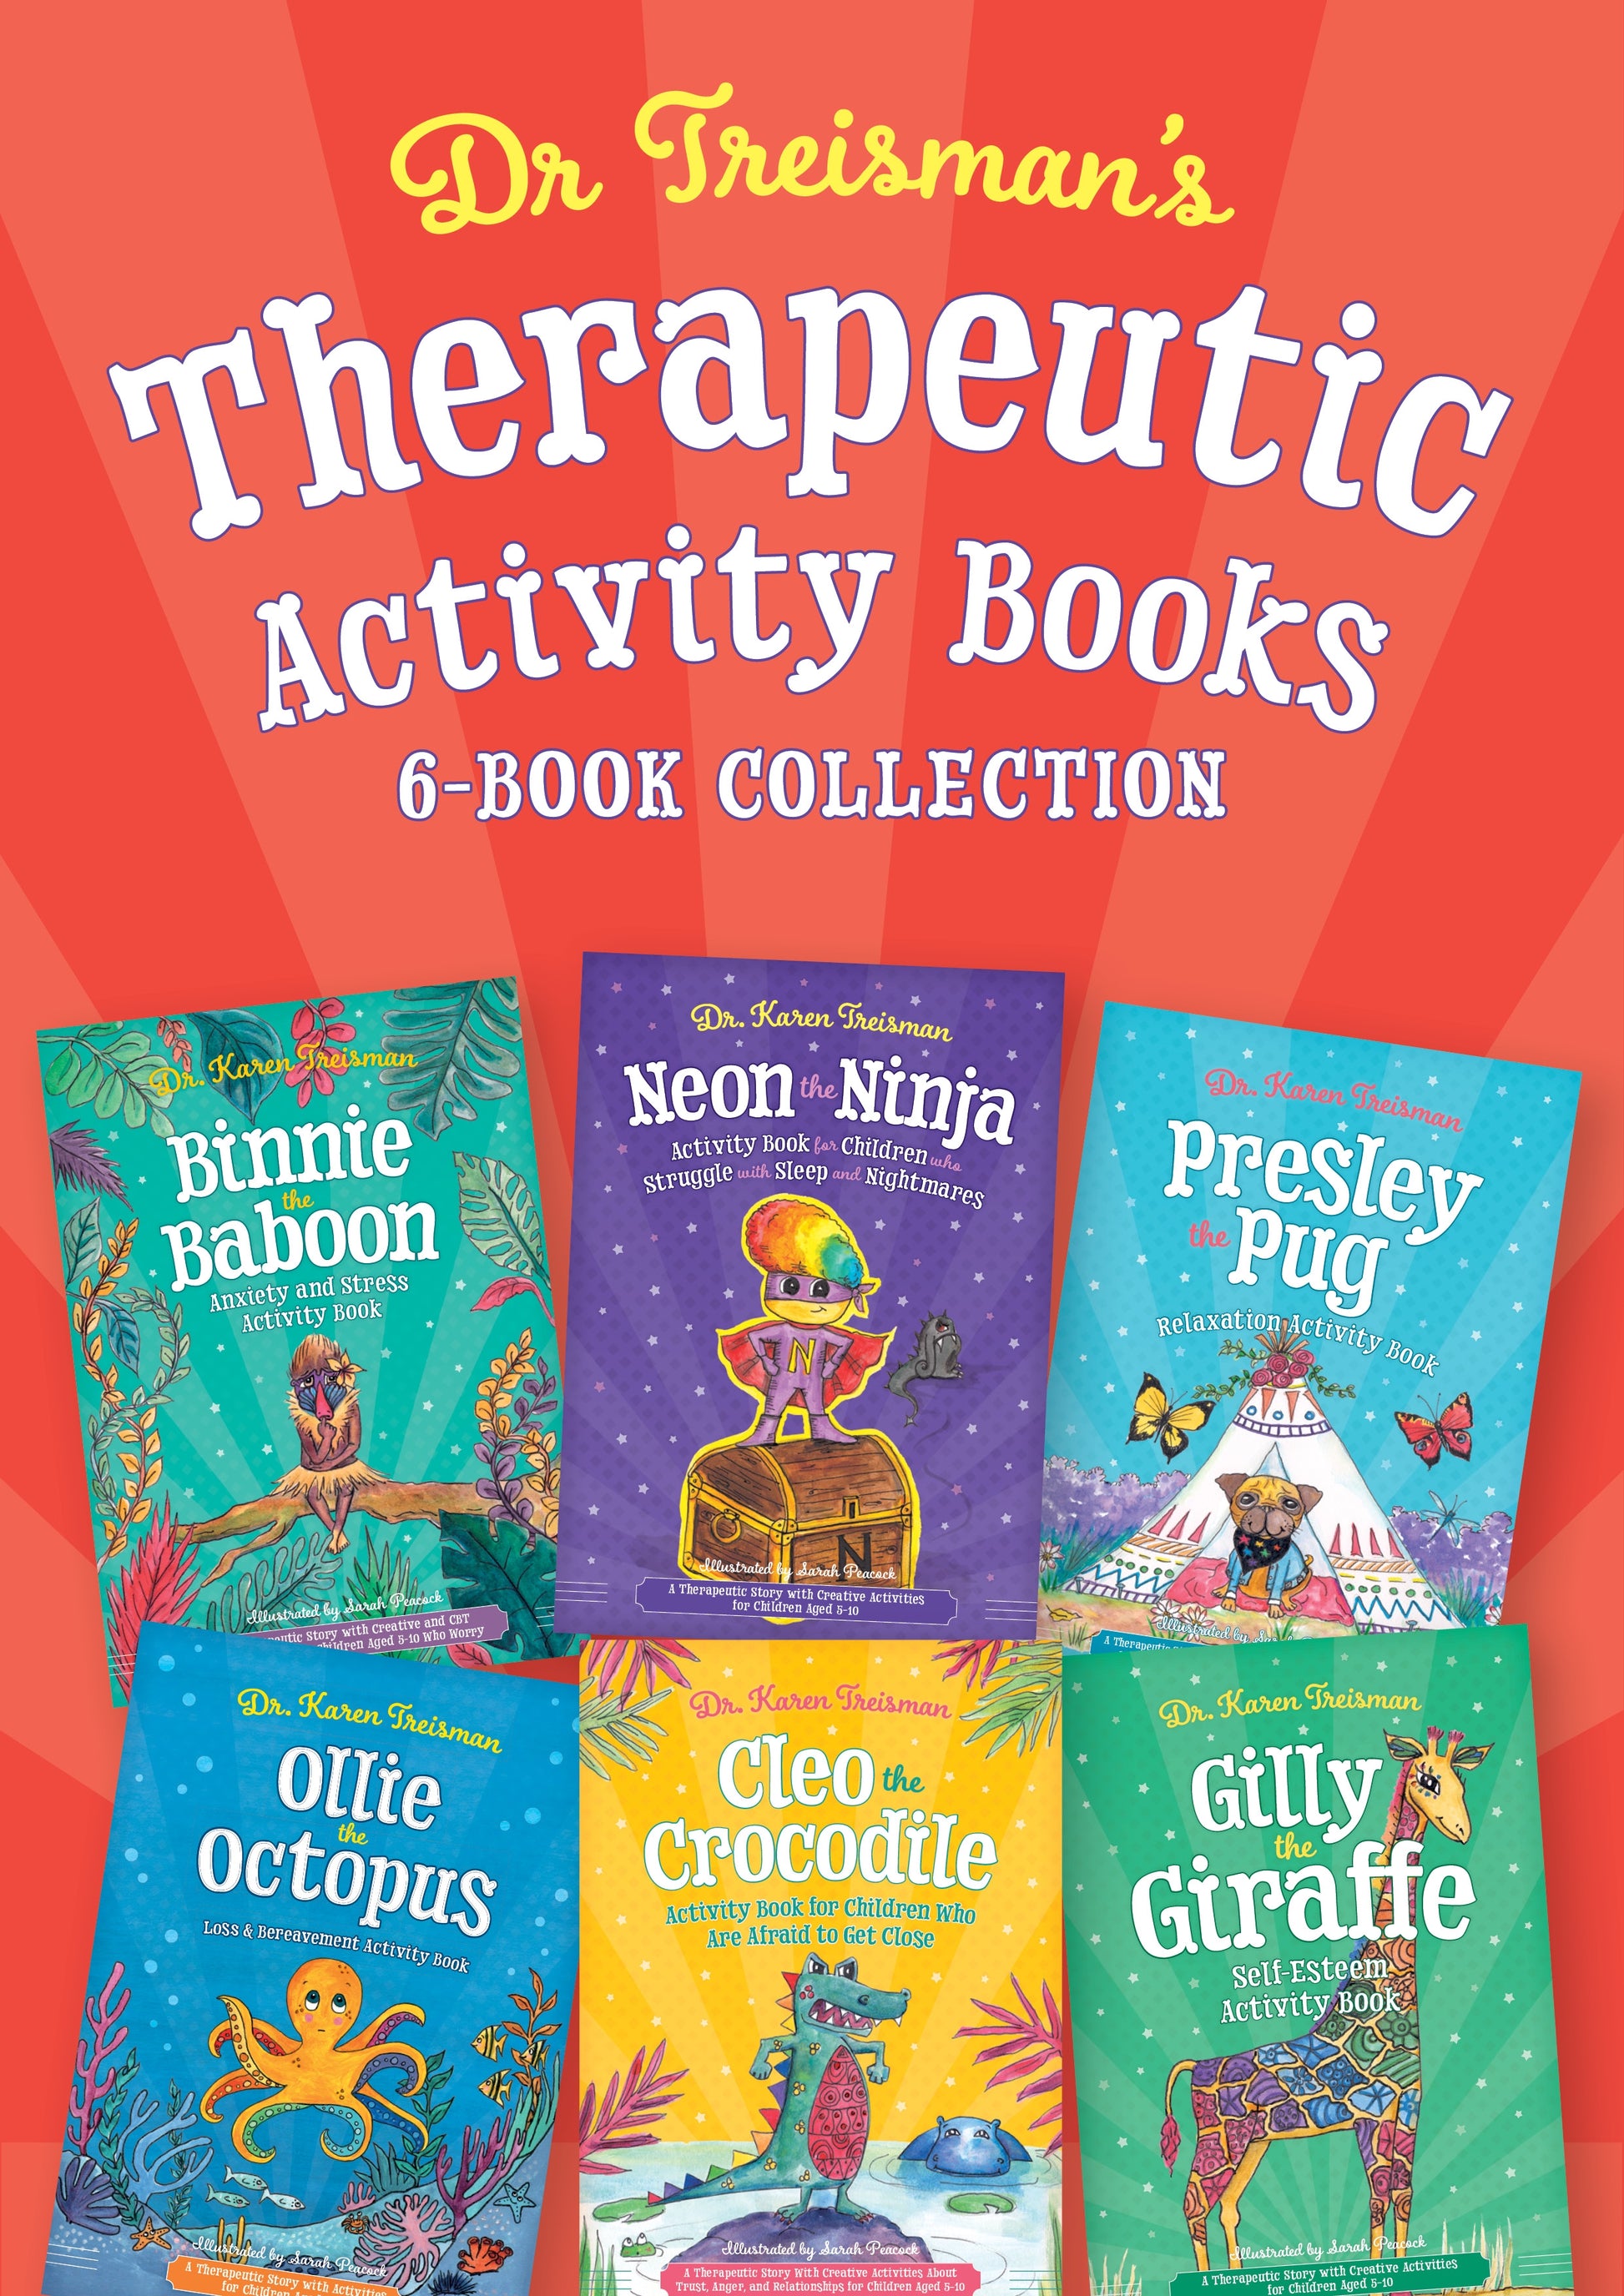 Dr. Treisman's Therapeutic Activity Books by Karen Treisman, Sarah Peacock